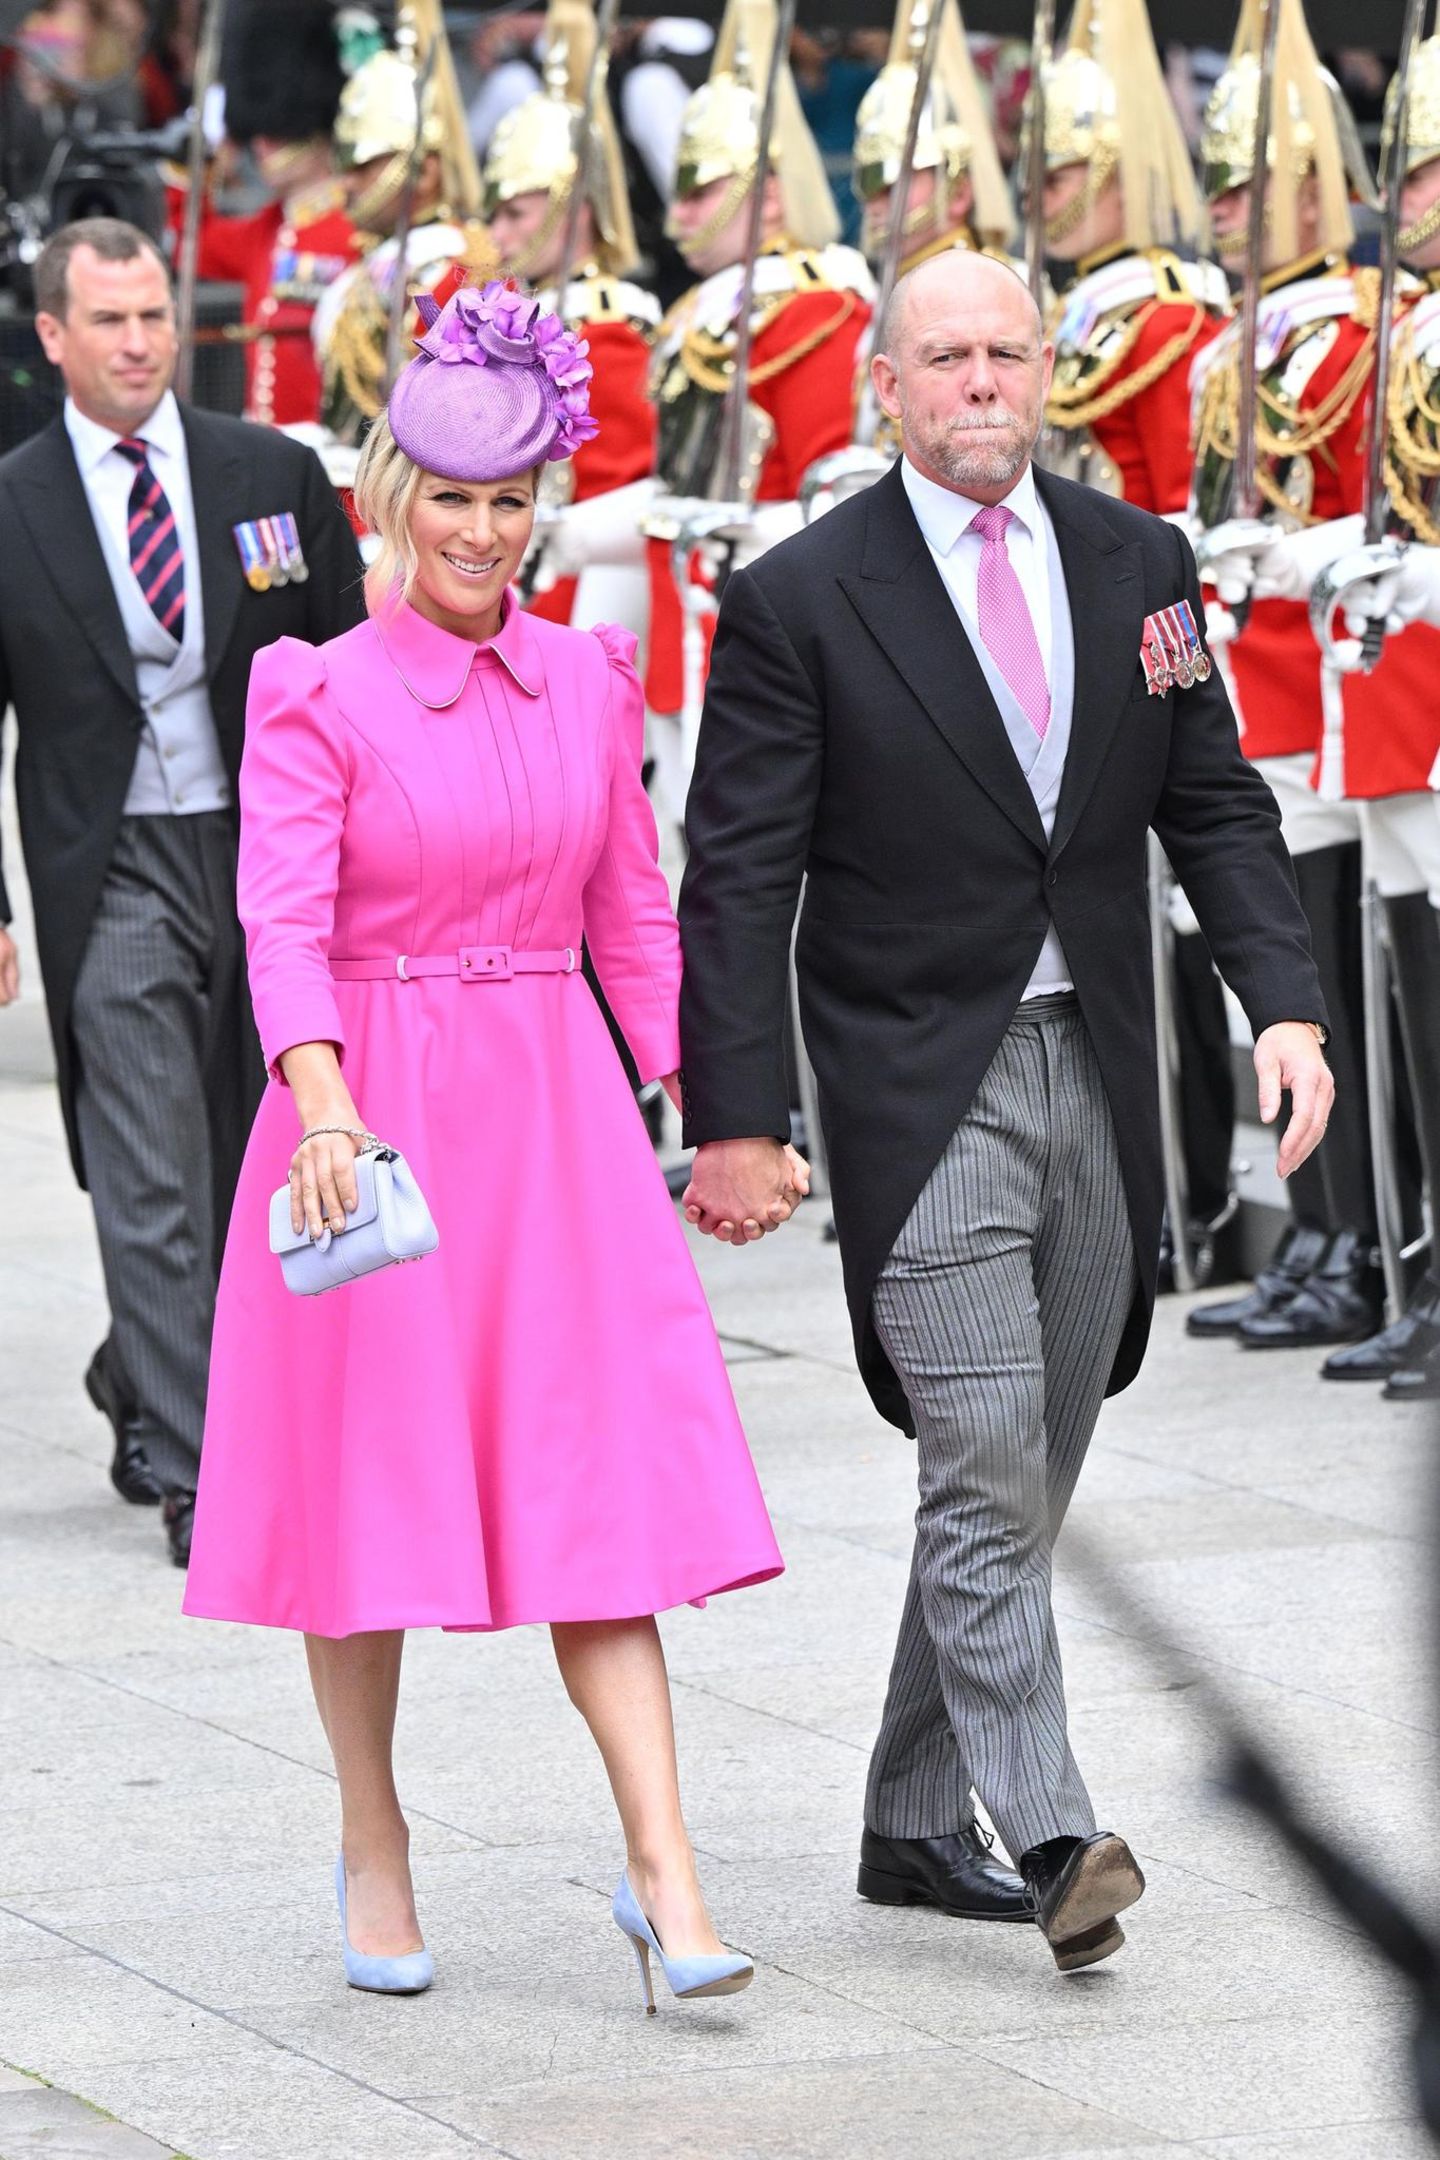 Queen-Enkelin Zara Tindall ehrt ihre Großmutter mit einem besonders fröhlichen Look in knalligem Pink. Passend dazu trägt ihr Mann Mike für den Gottesdienst in London eine pinkfarbene Krawatte zum feierlichen Frack.